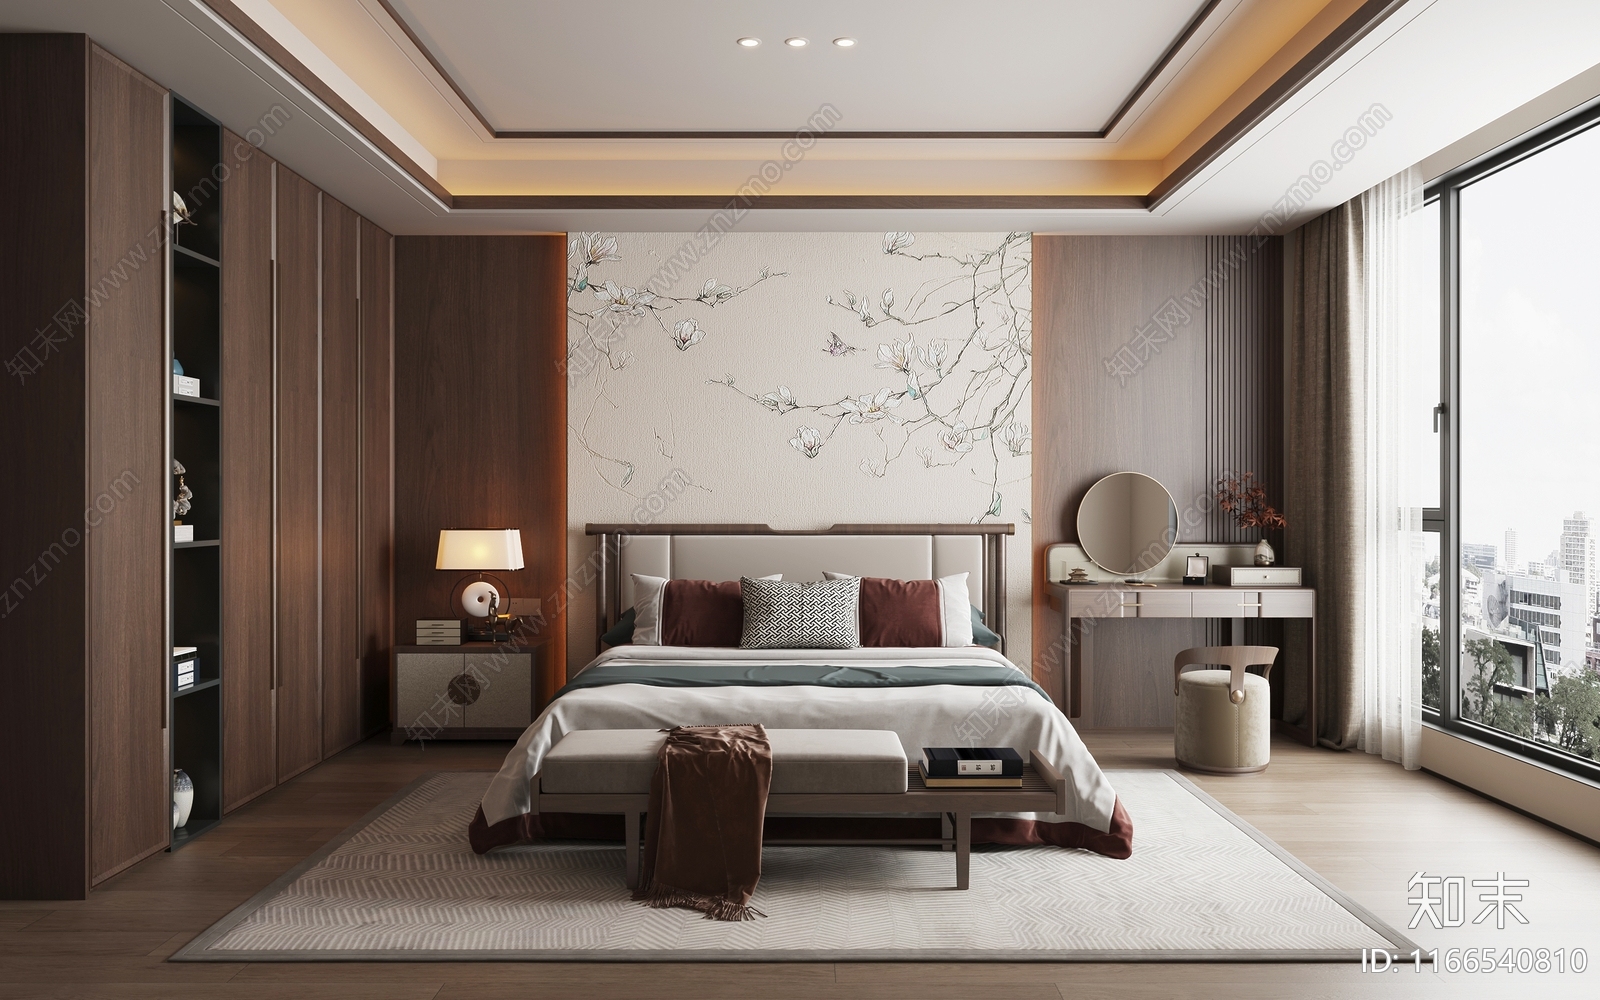 新中式中式家居卧室3D模型下载【ID:1166540810】